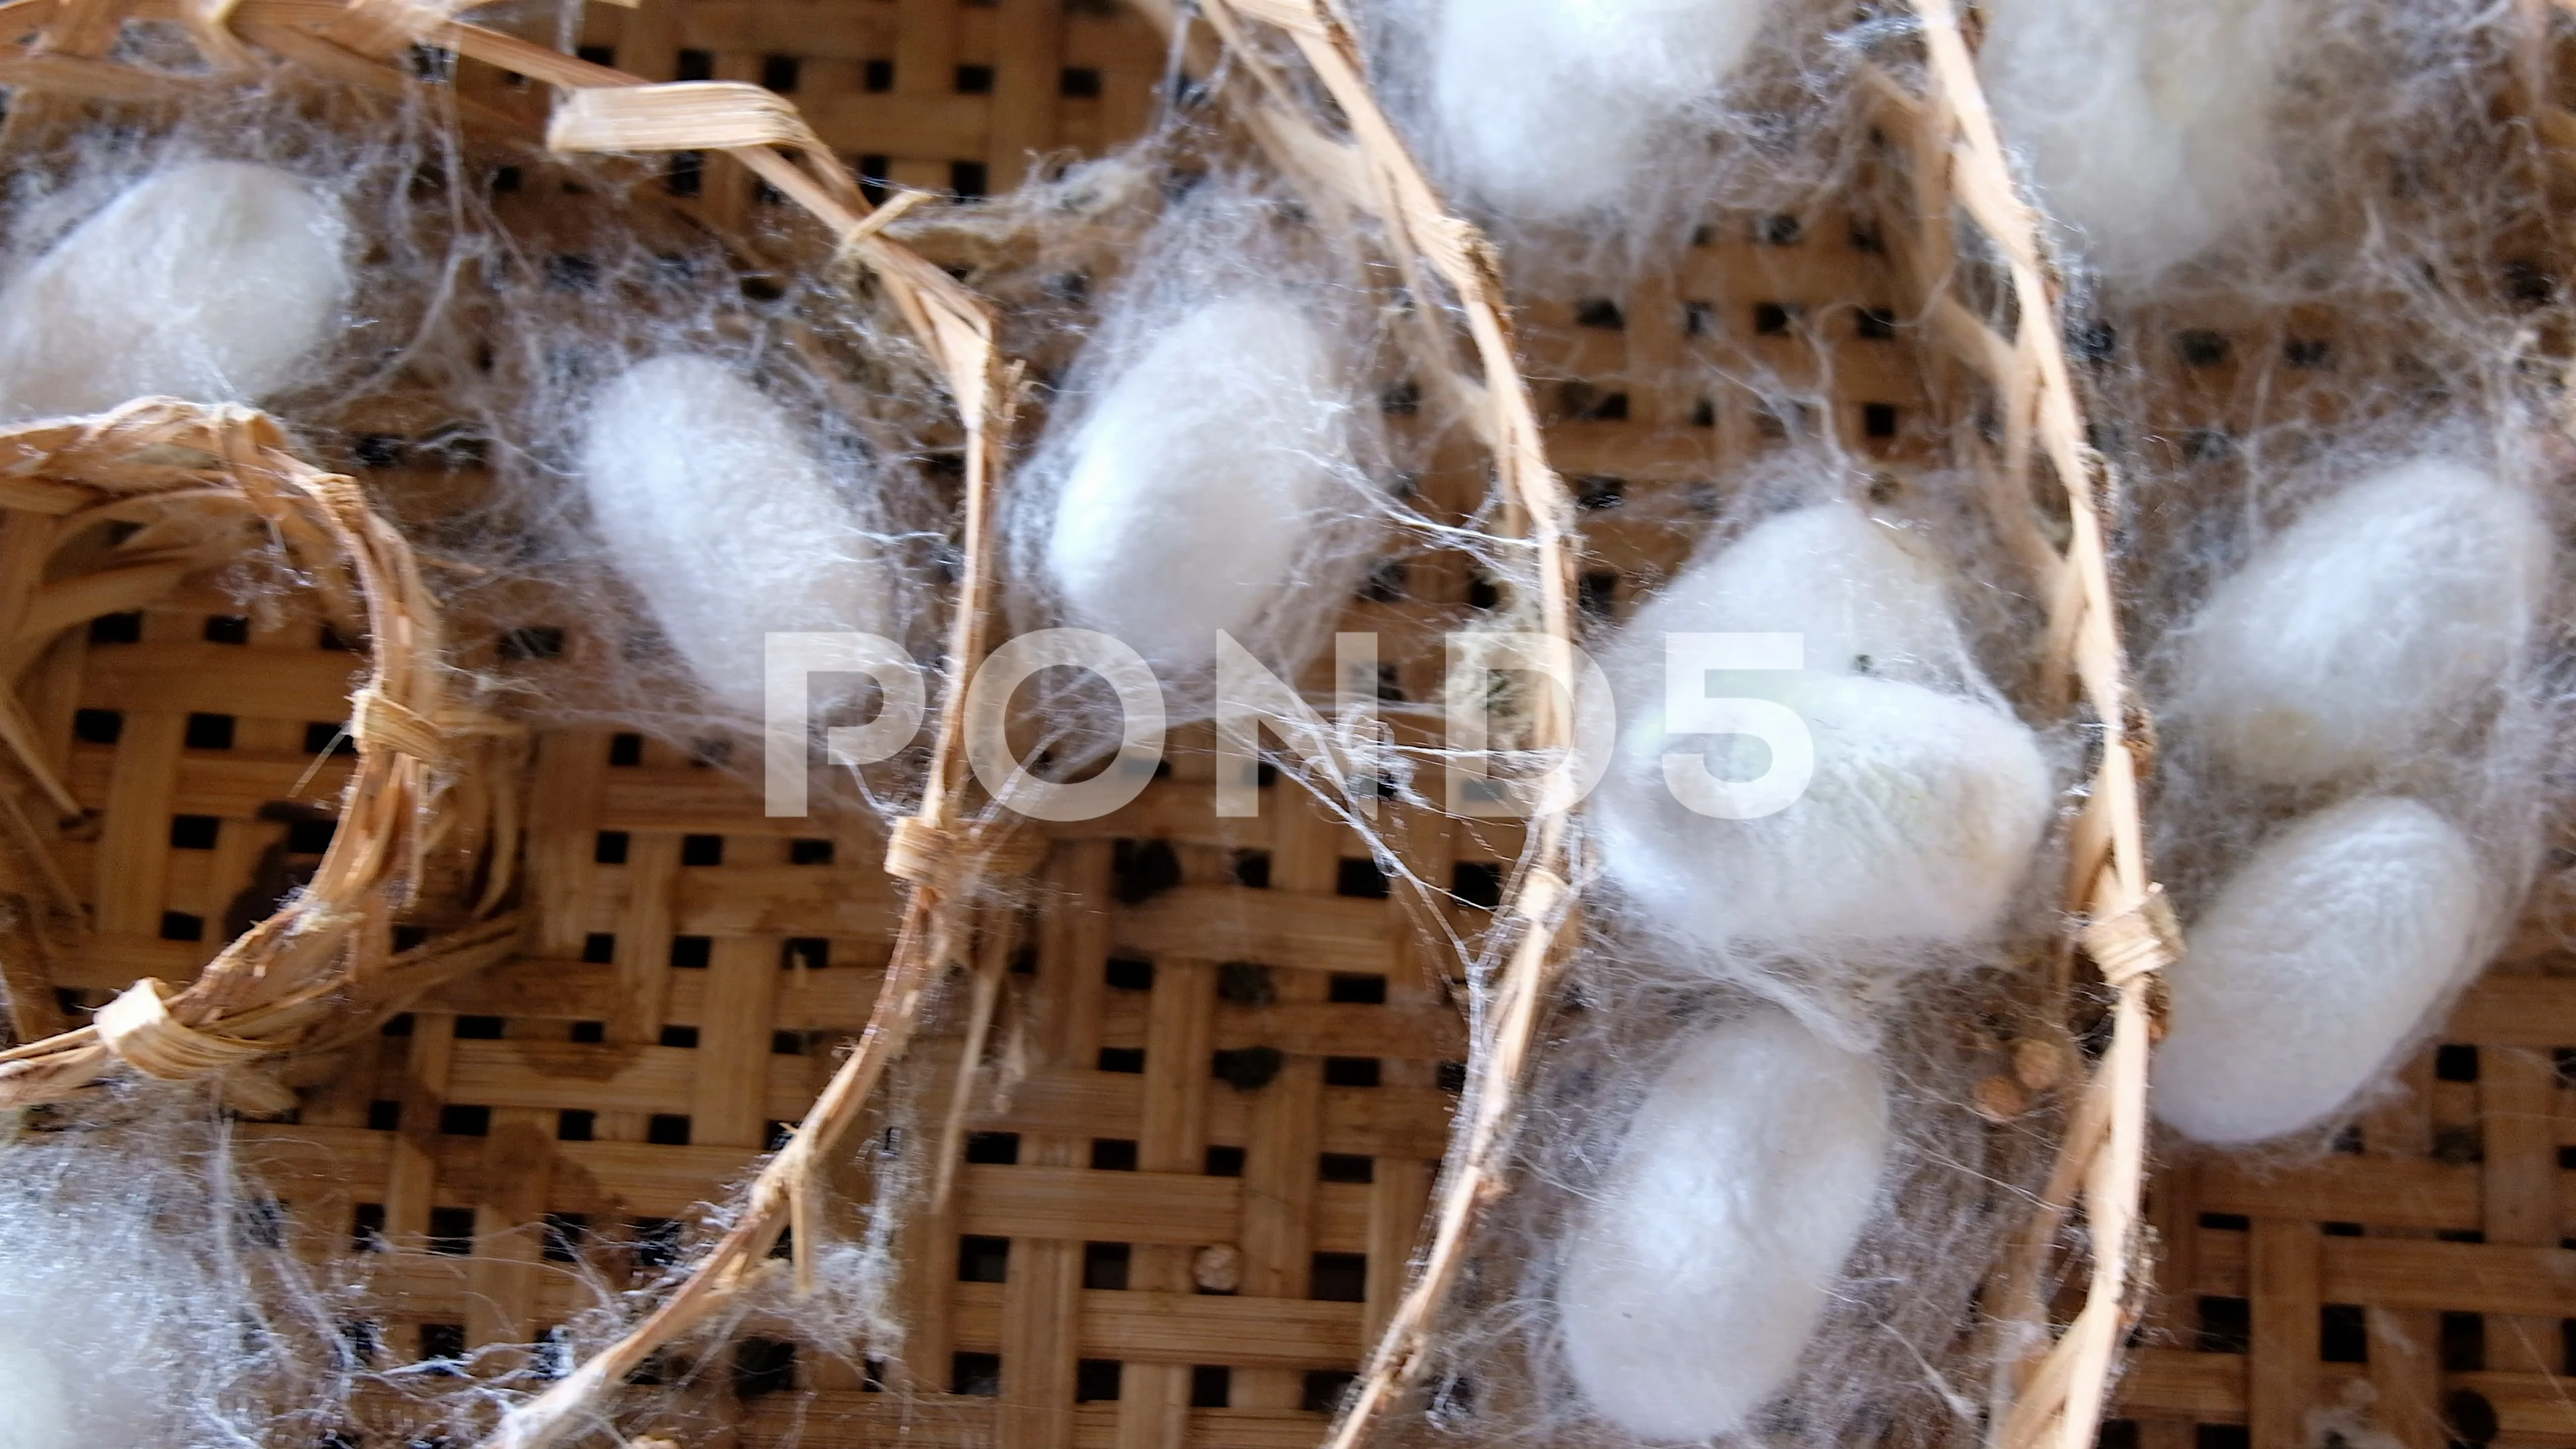 silk worm nest